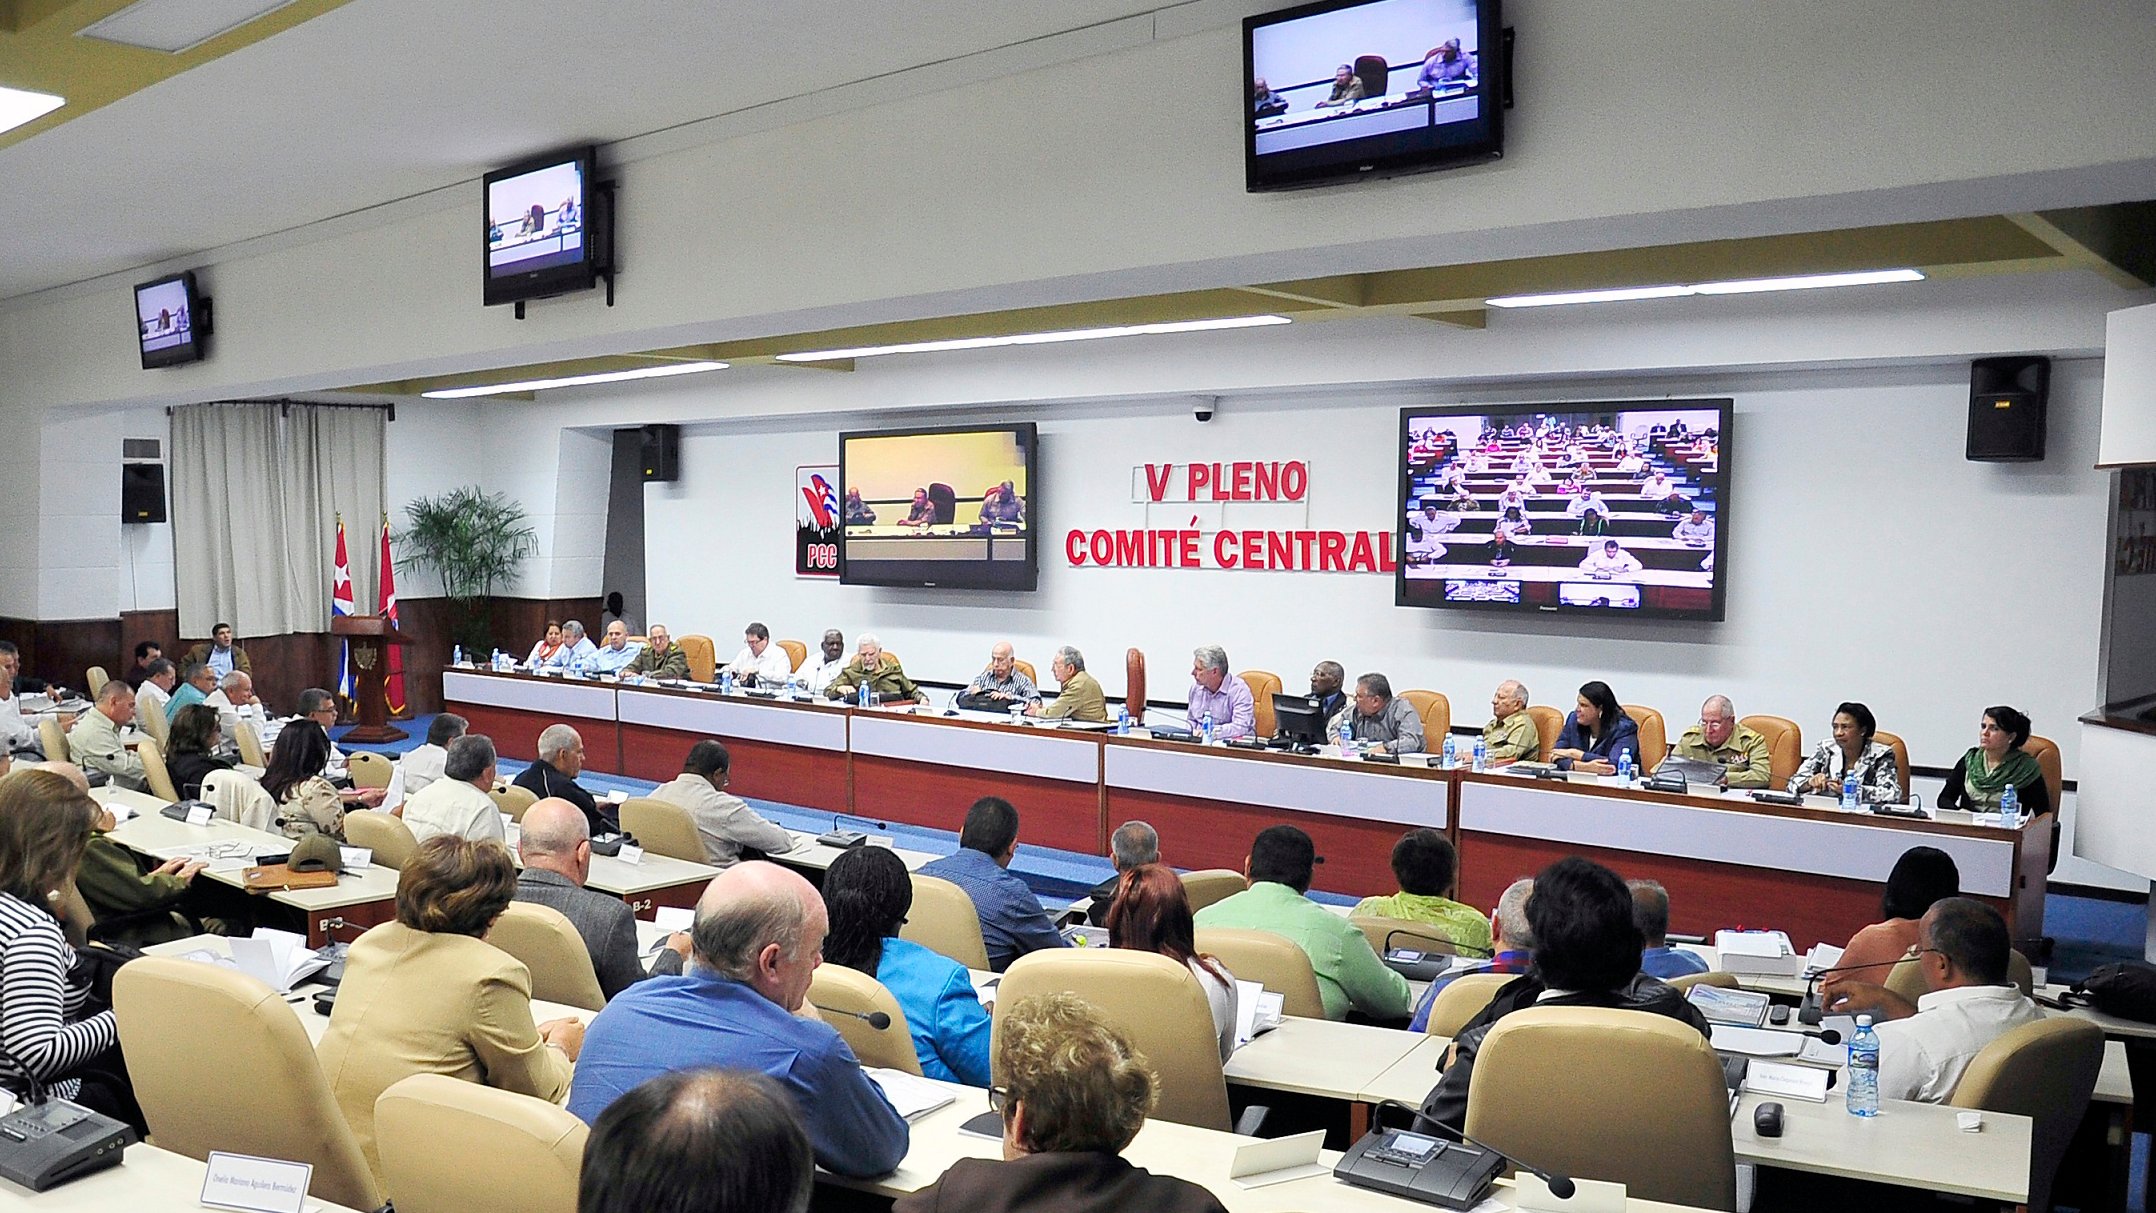 Analizó V Pleno del Comité Central del Partido importantes temas de la actualización del modelo económico y social cubano